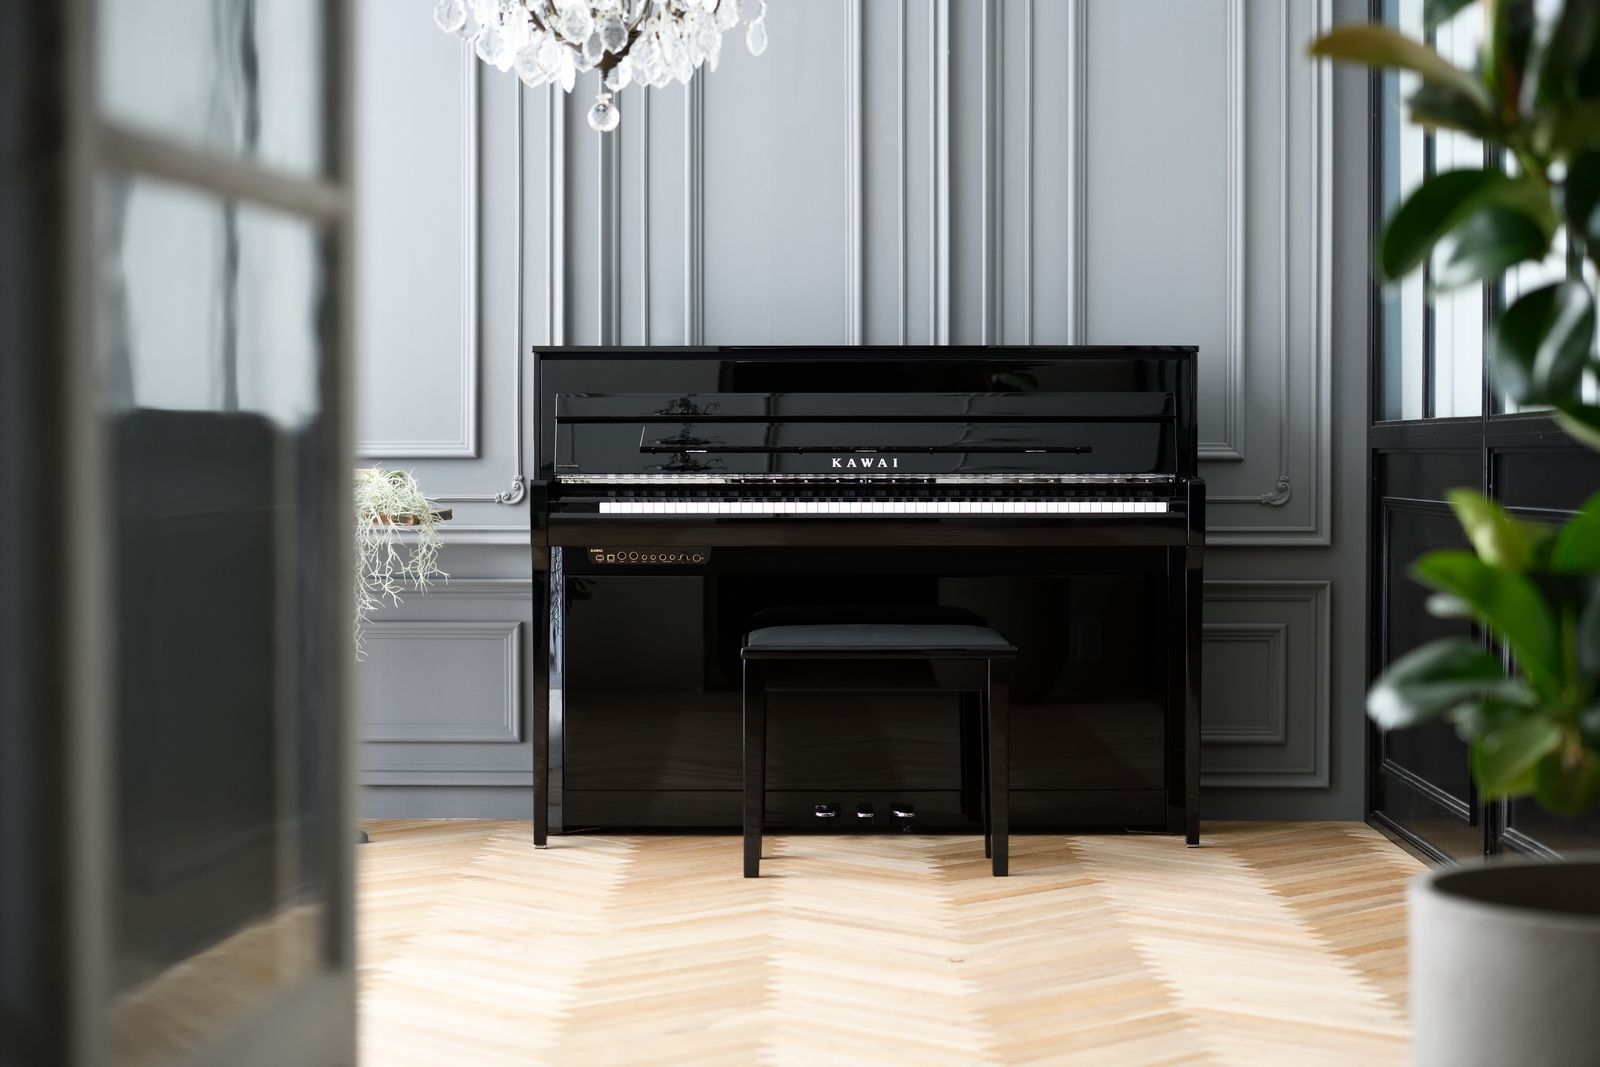 New Baldwin grand piano for sale